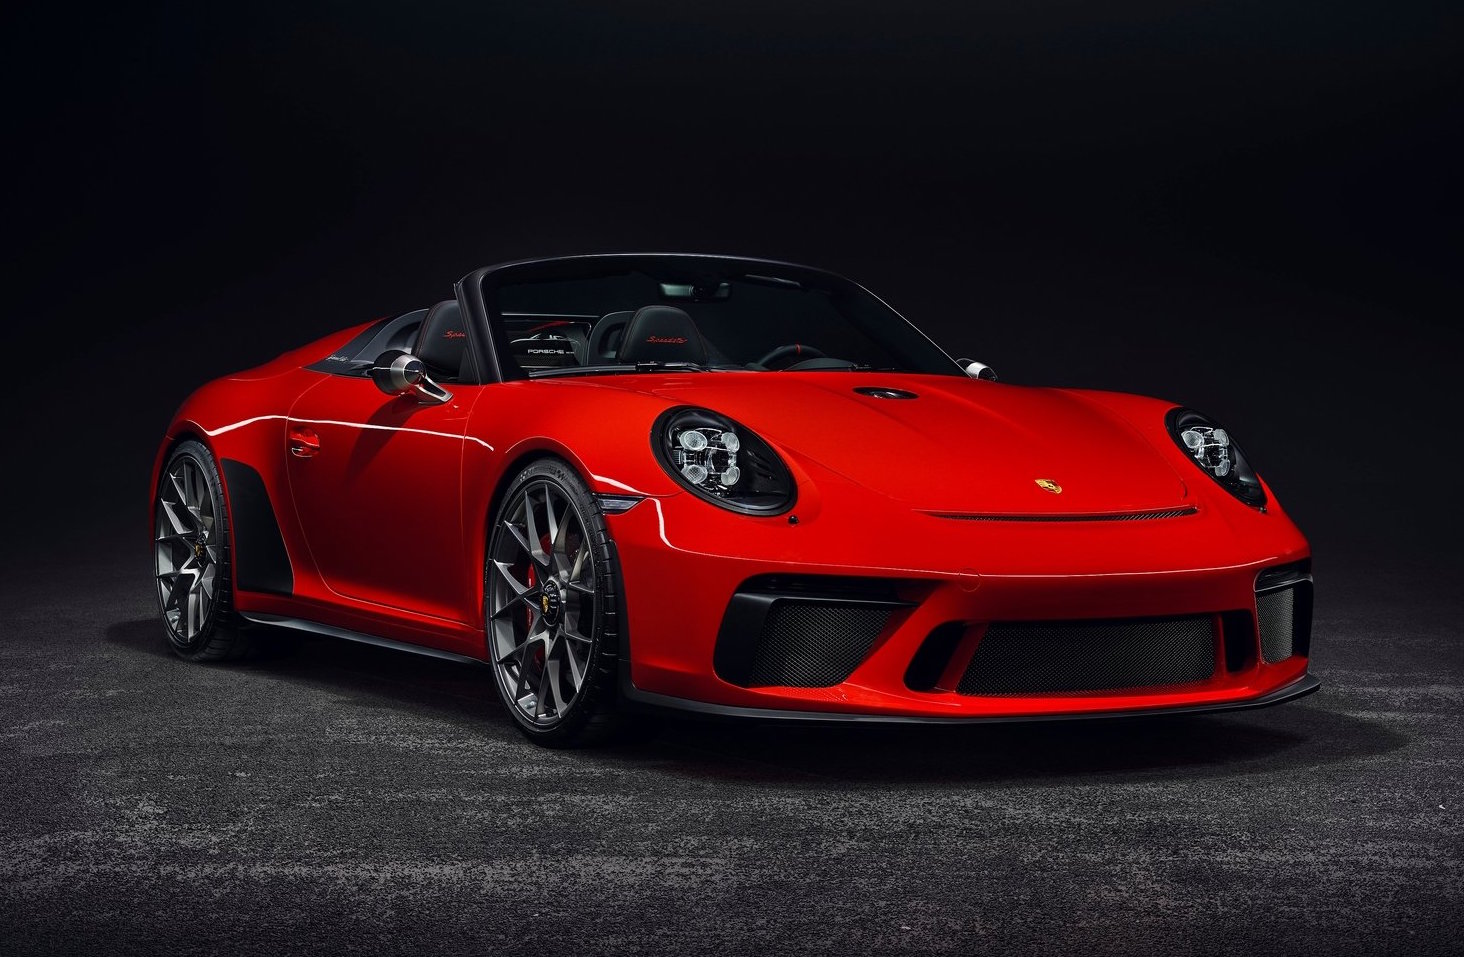 Porsche 911 Speedster confirmed for production, arrives 2019